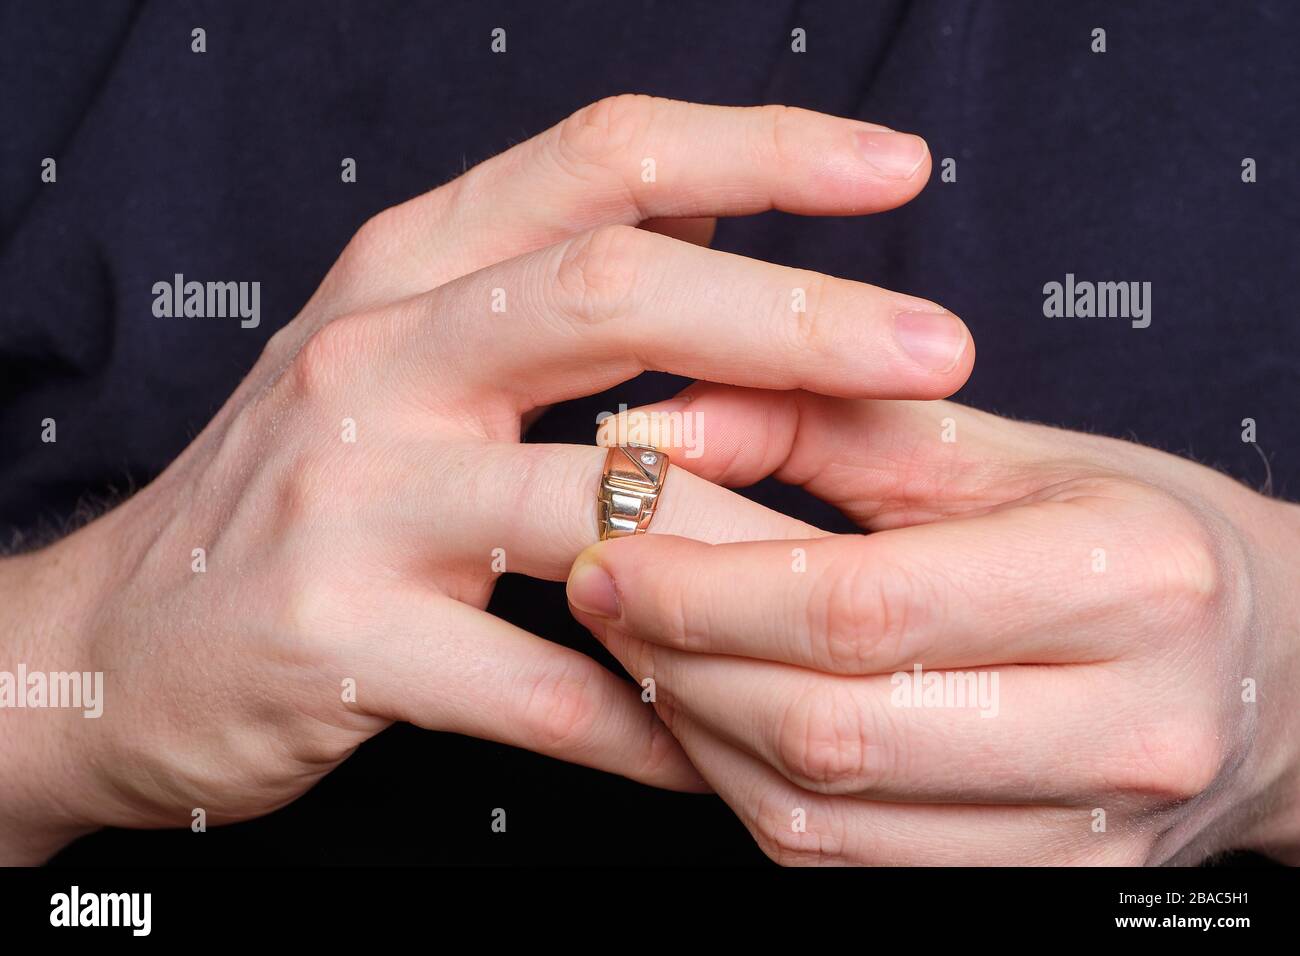 Un homme prend un anneau de mariage d'un doigt de sa main. Gros plan. Banque D'Images